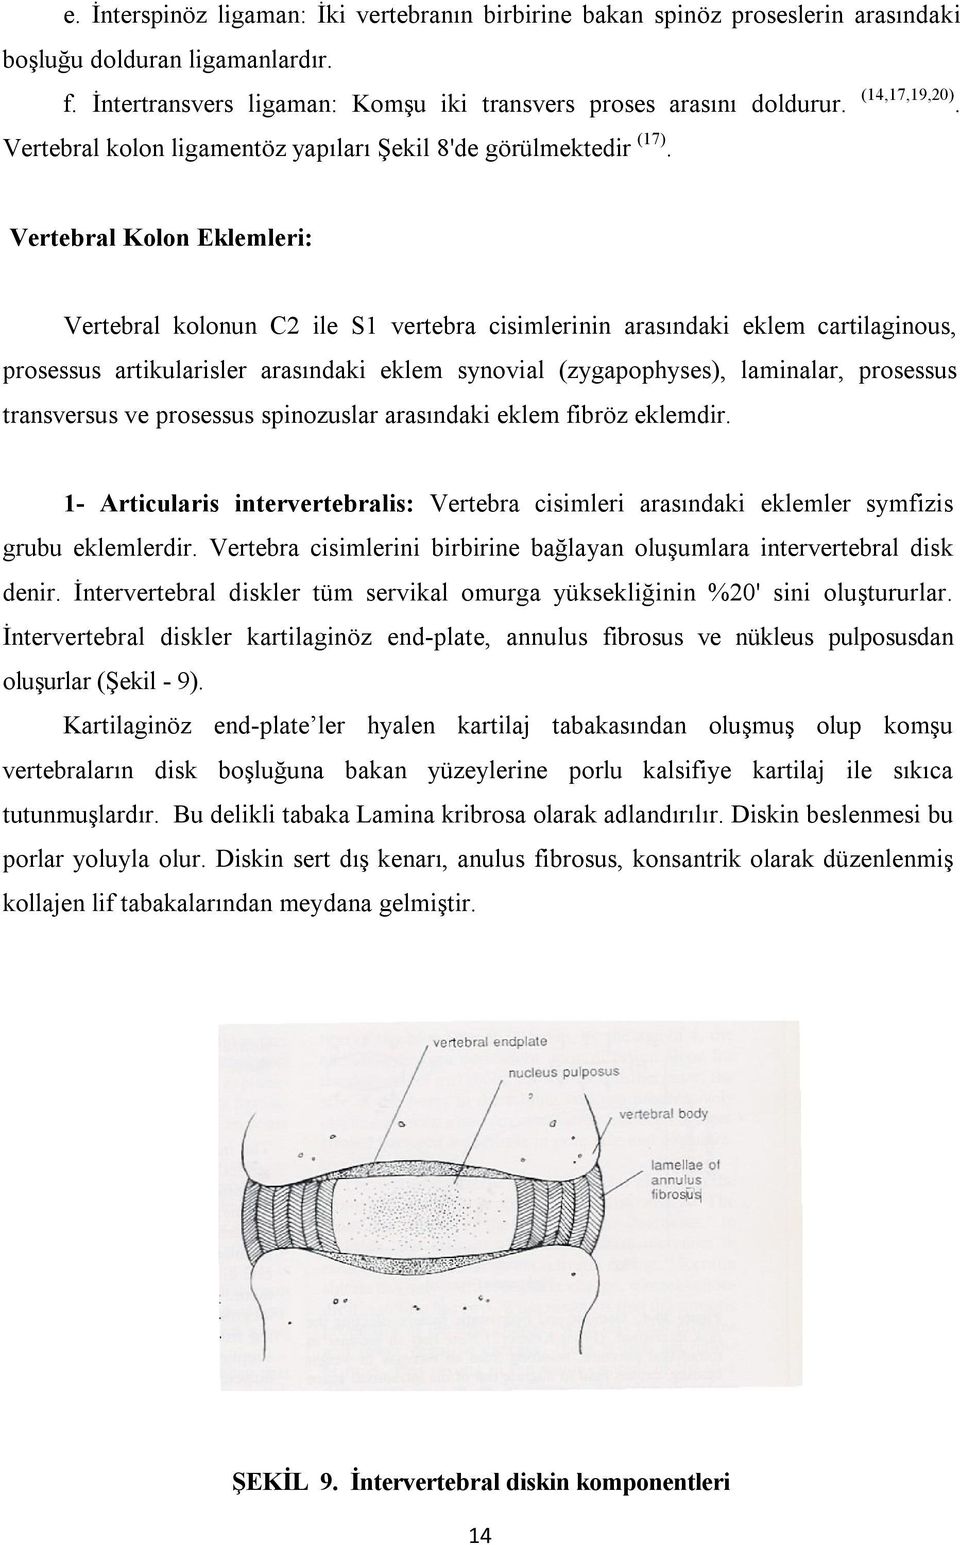 Vertebral Kolon Eklemleri: Vertebral kolonun C2 ile S1 vertebra cisimlerinin arasındaki eklem cartilaginous, prosessus artikularisler arasındaki eklem synovial (zygapophyses), laminalar, prosessus